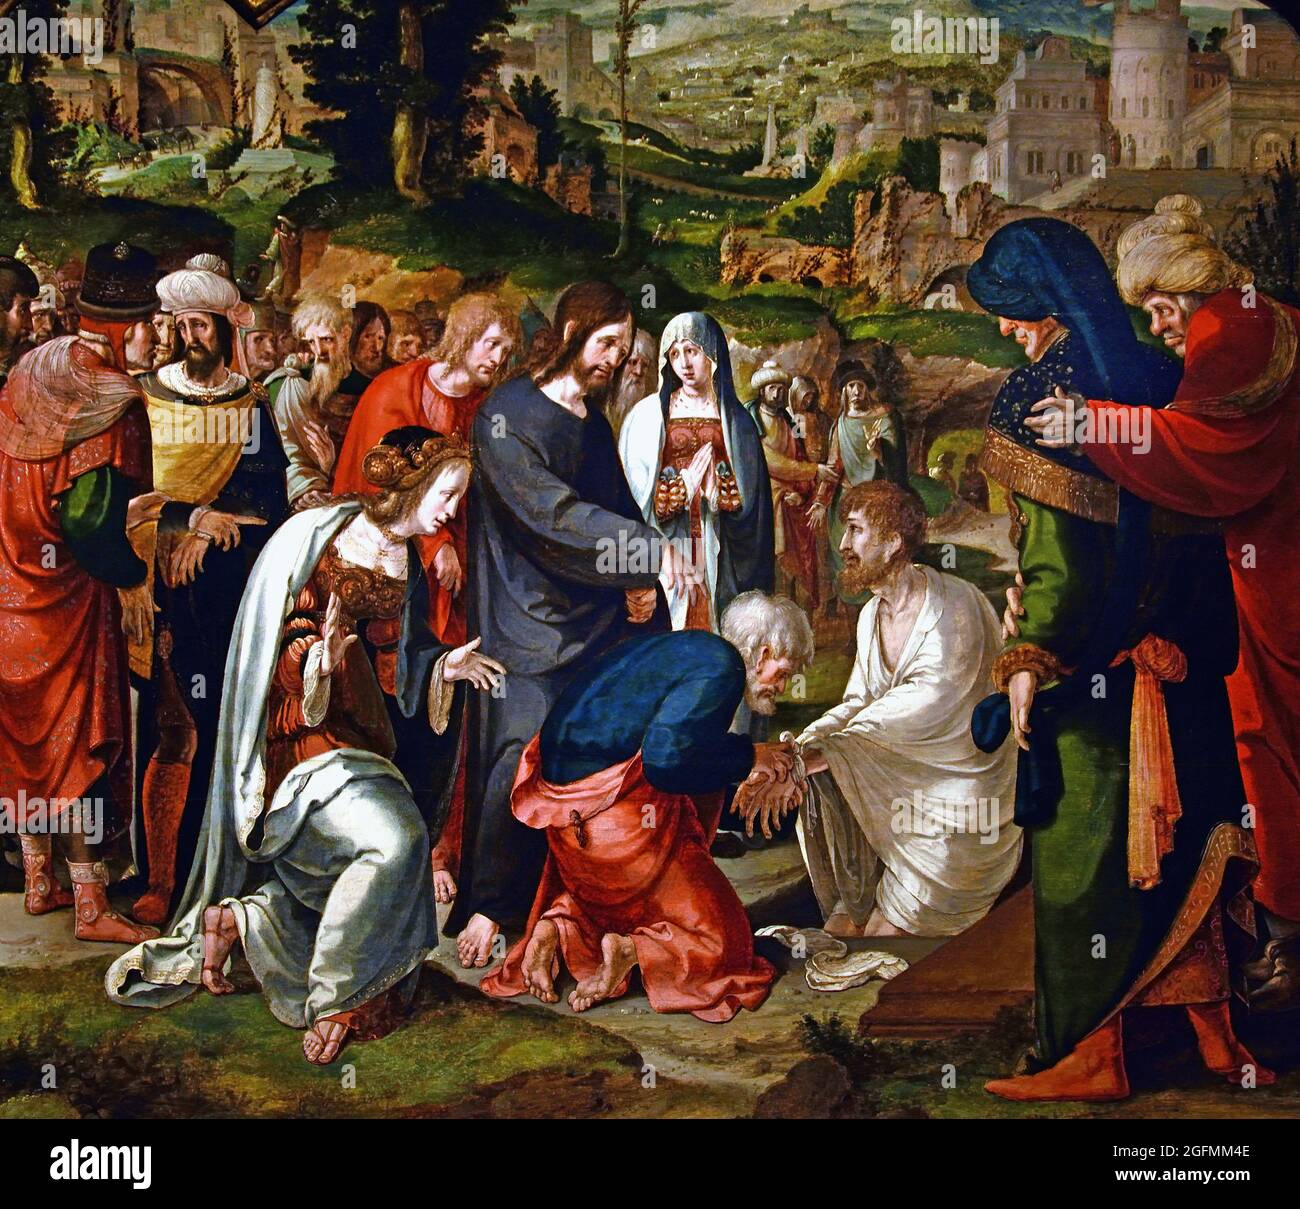 Die Auferweckung des Lazarus, Aertgen Claesz van Leyden (zugeschrieben), 1530 -1535 Öl auf Tafel, 75,7cm × 78,8cm (Dieses Triptychon wurde zum Gedenken an ein Ehepaar gemalt, wobei der Mann und die Frau auf den Flügeln knieend dargestellt wurden. Die zentrale Tafel zeigt passend das Wunder, dass Christus Lazarus von den Toten auferweckt hat, eine Anspielung auf die Verheißung des ewigen Lebens und den Glauben, dass der Tod durch den Glauben an Christus überwunden wird.) Stockfoto